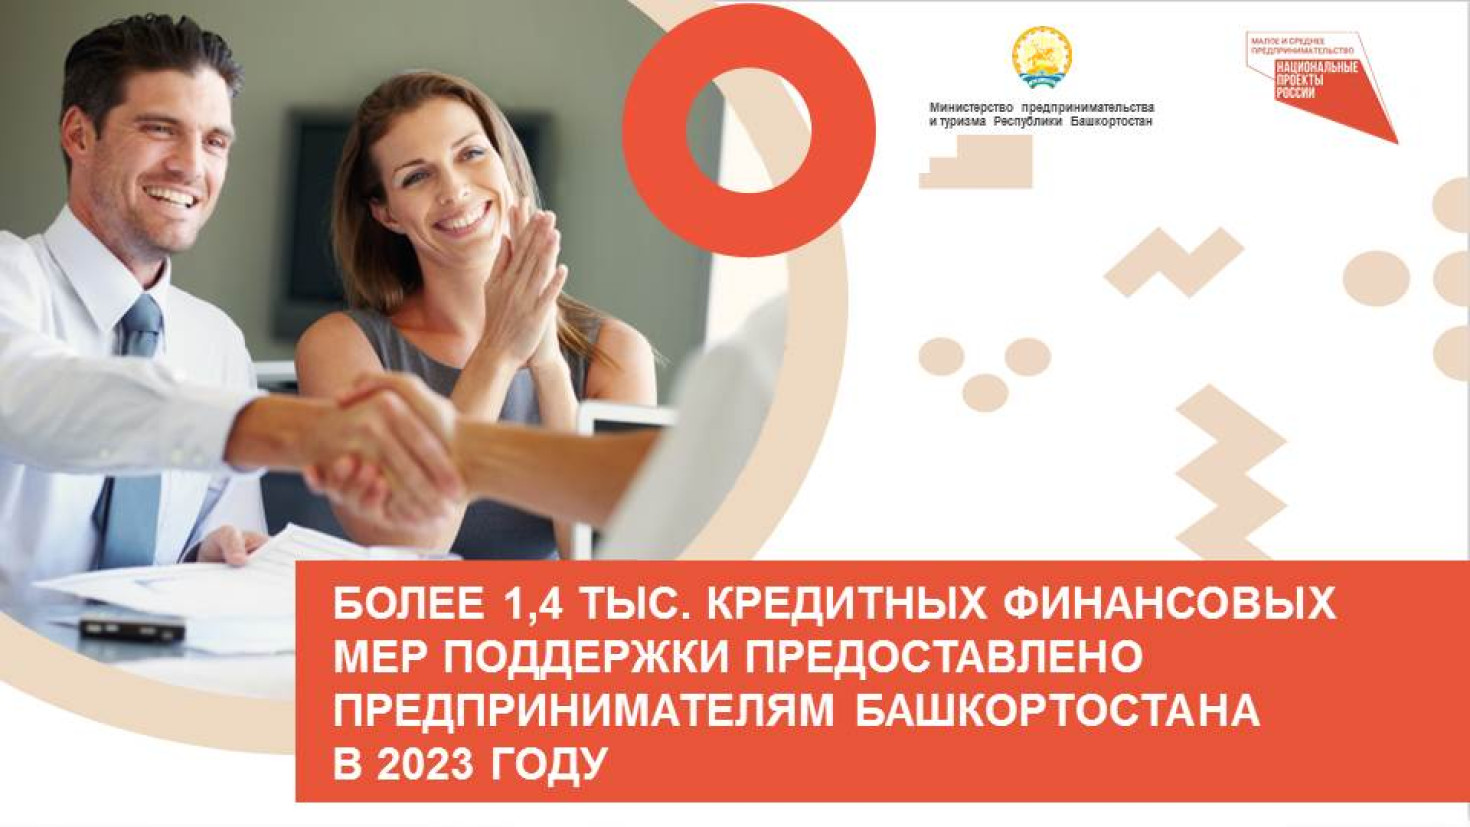 Более 1,4 тыс. кредитных финансовых мер поддержки предоставлено предпринимателям Башкортостана в 2023 году